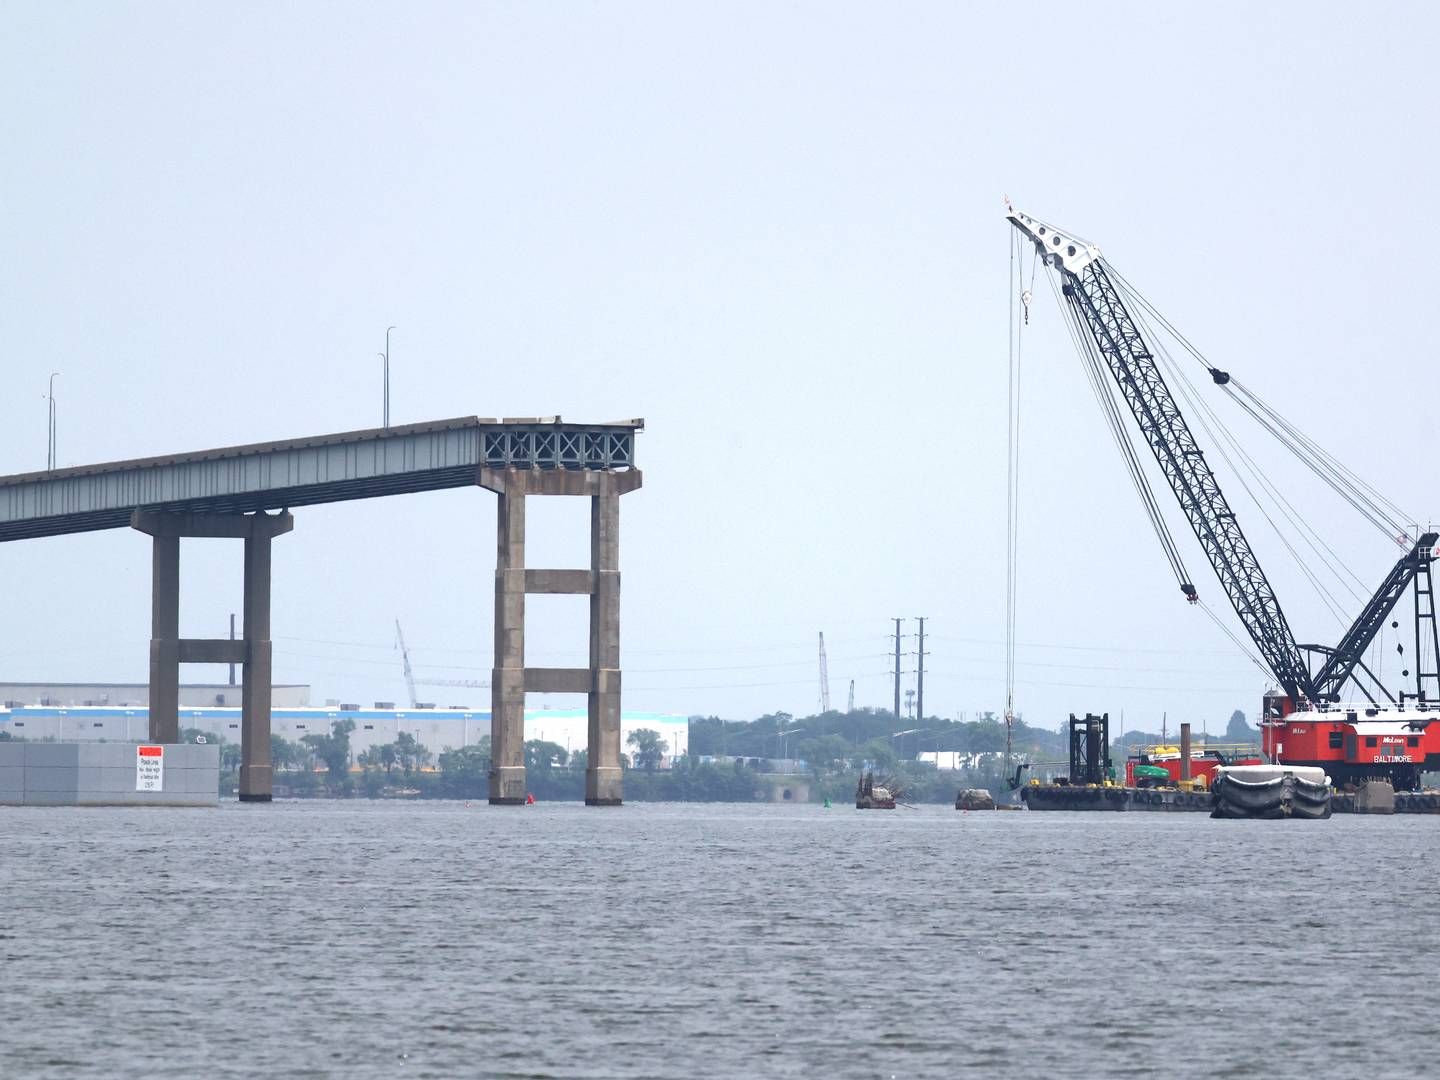 I marts styrtede broen Francis Scott Key Bridge sammen, efter at den var blevet påsejlet af et containerskib. Siden har myndighederne arbejdet intenst for at få genåbnet kanalen. | Foto: Mpi34/AP/Ritzau Scanpix